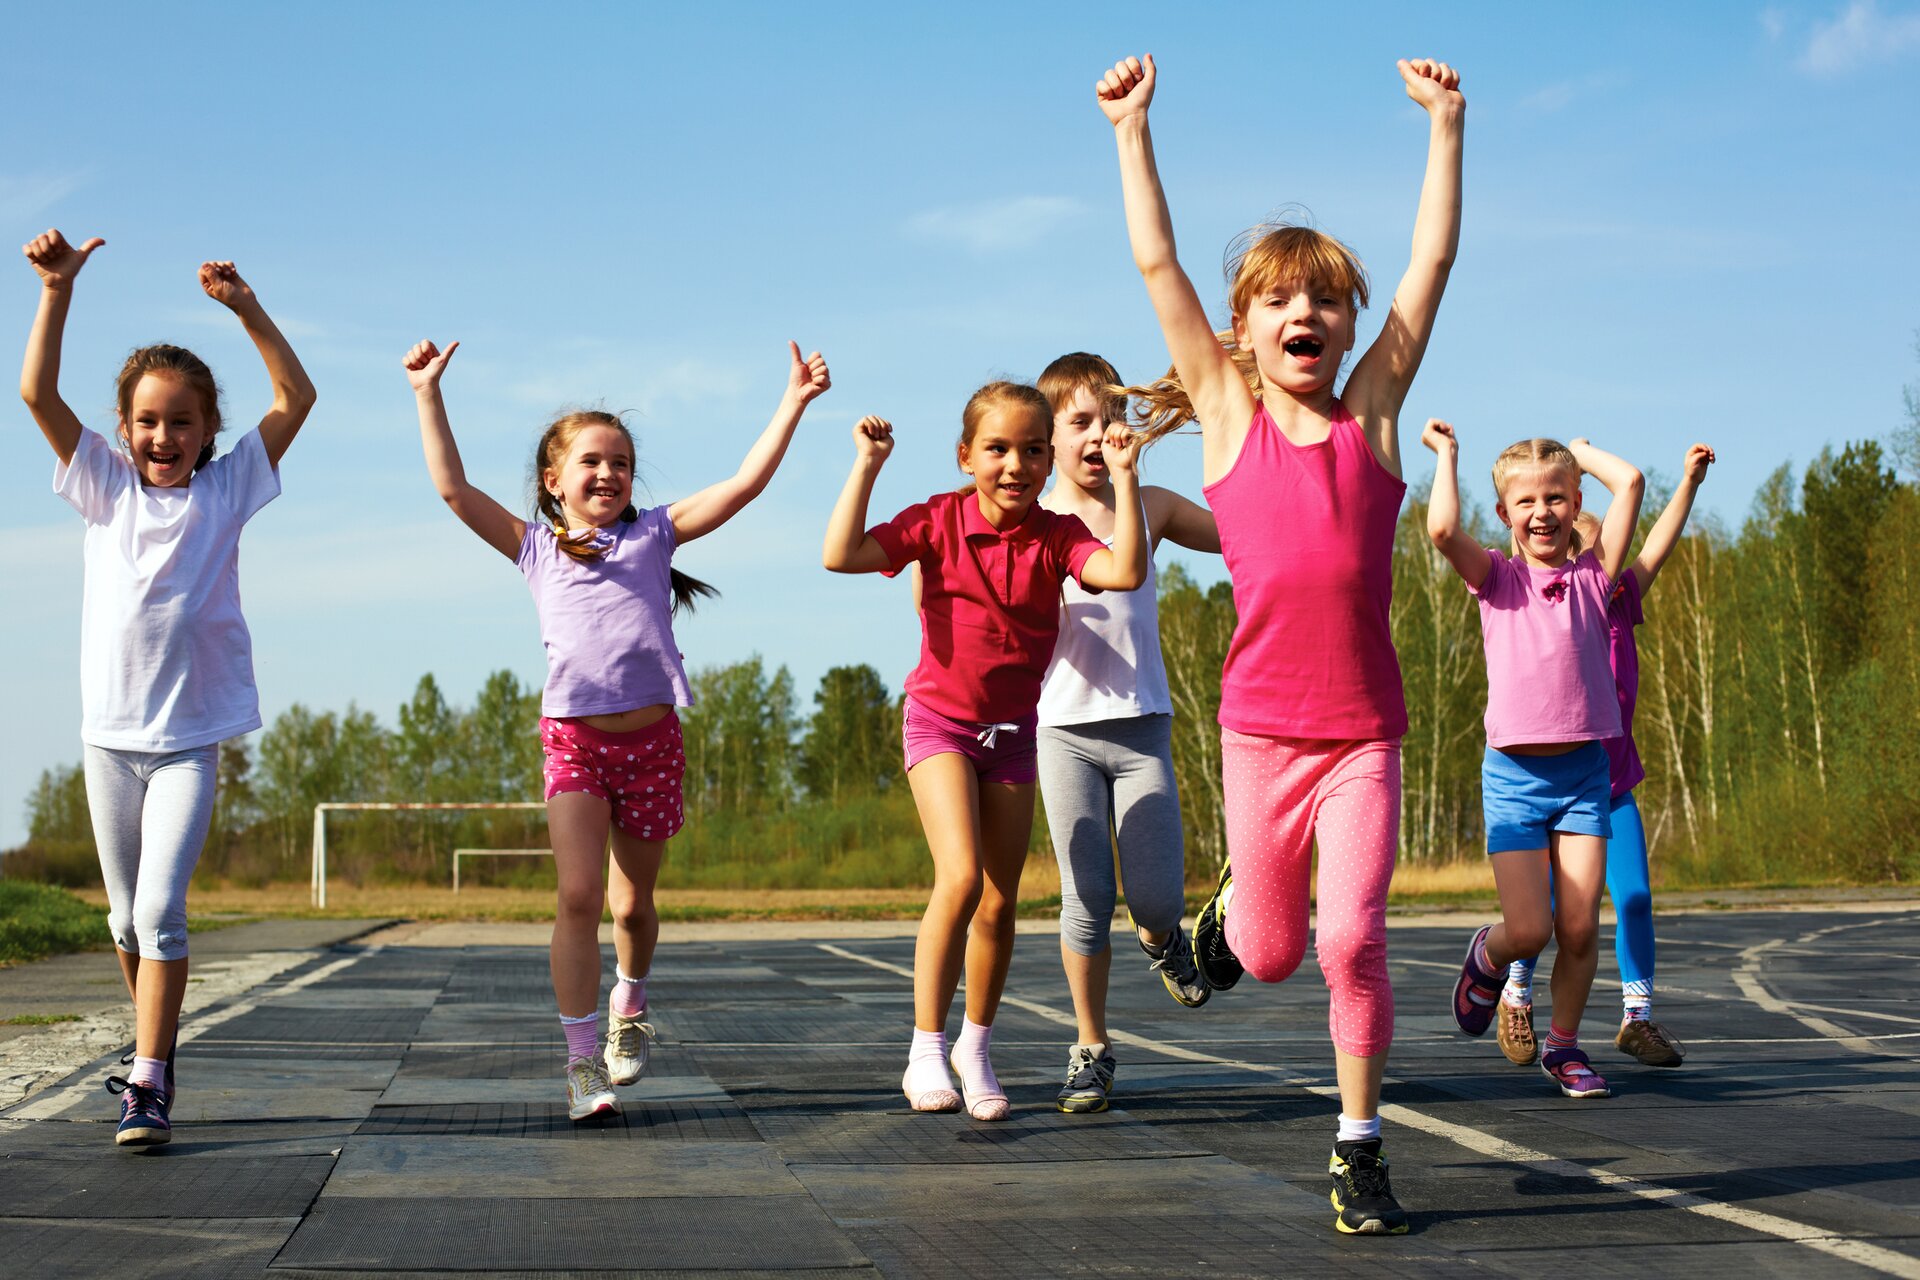 Zdjęcie przedstawia grupę dzieci biegnących po sportowej bieżni, z rękami uniesionymi do góry, w sportowych, kolorowych strojach i sportowych butach. Na pierwszym planie jest rudowłosa dziewczynka z kucykiem i grzywką. Za nią w drugiej linii, po lewej stronie biegną trzy dziewczynki, w trzeciej linii po prawej stronie chłopiec i dziewczynka. Za dziewczynką biegnie jeszcze jedno dziecko, które widoczne jest tylko częściowo. Na dalszym planie widać trawiaste boisko do piłki nożnej z dwoma metalowymi bramkami, a za nim las.